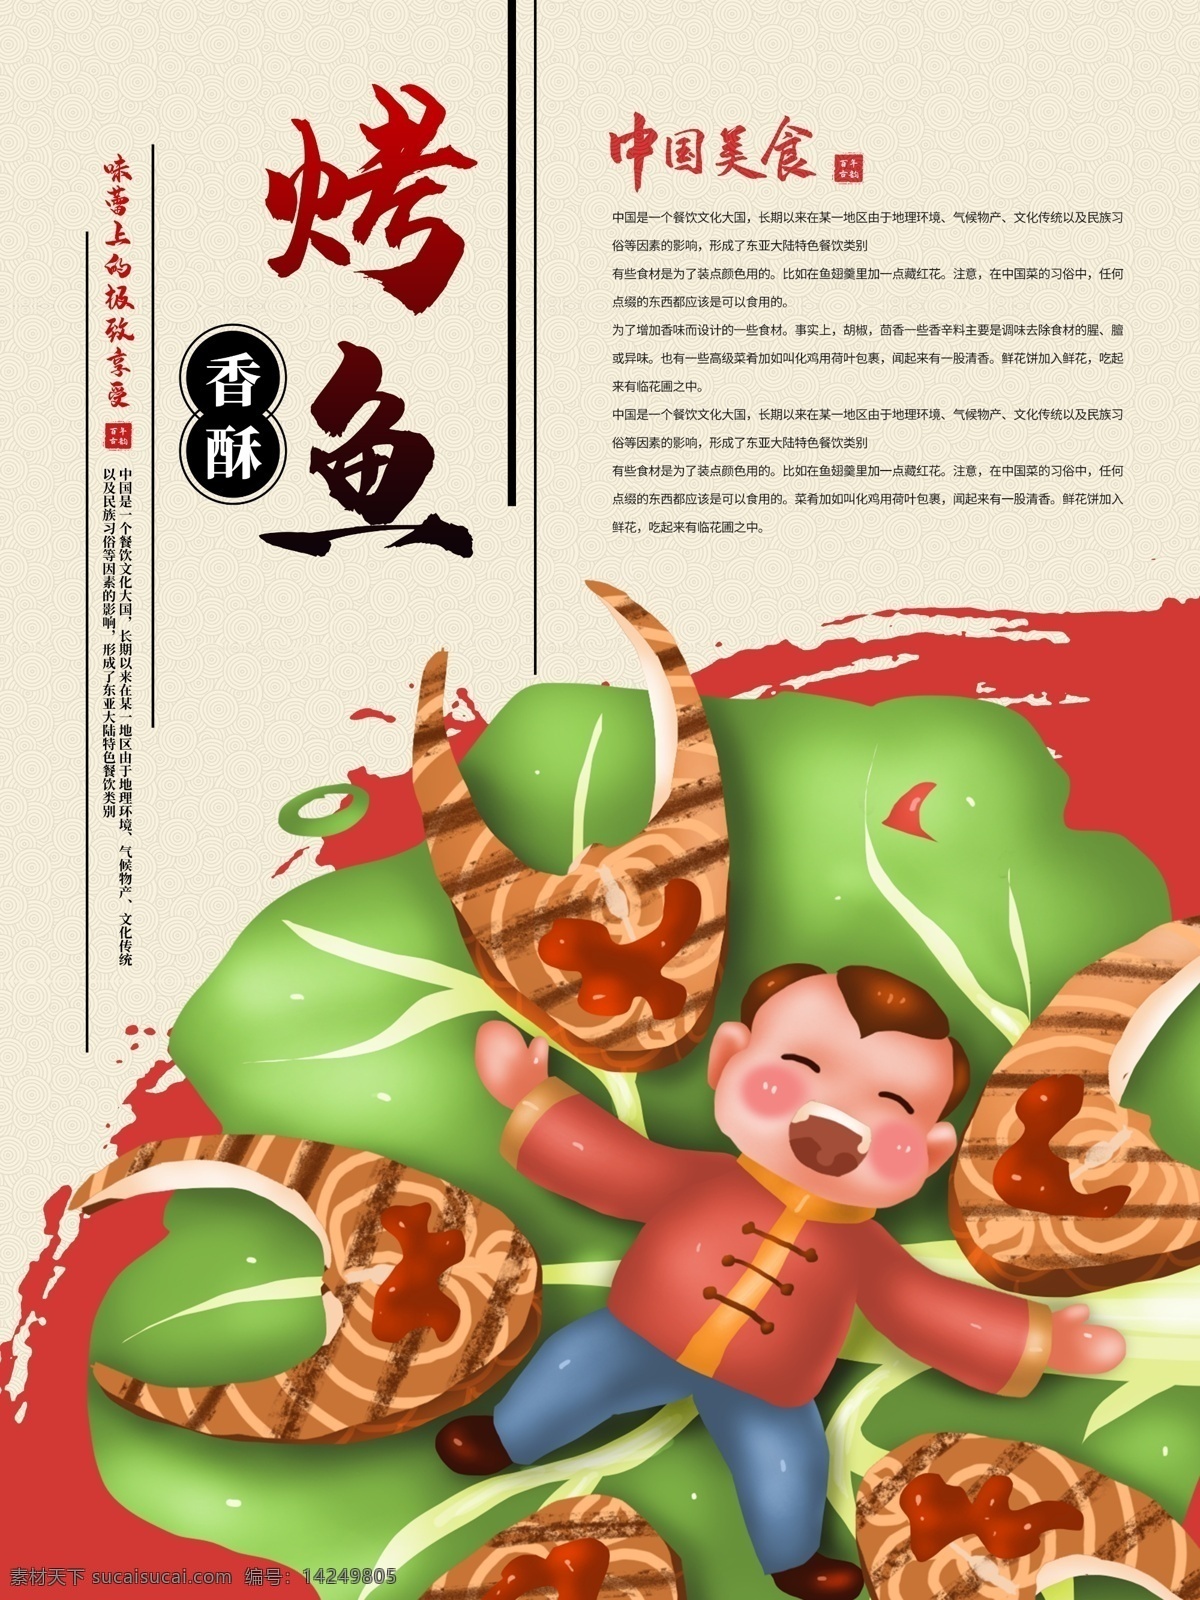 手绘 中国 风 烤鱼 系列 海报 中国风 卡通人物 插画